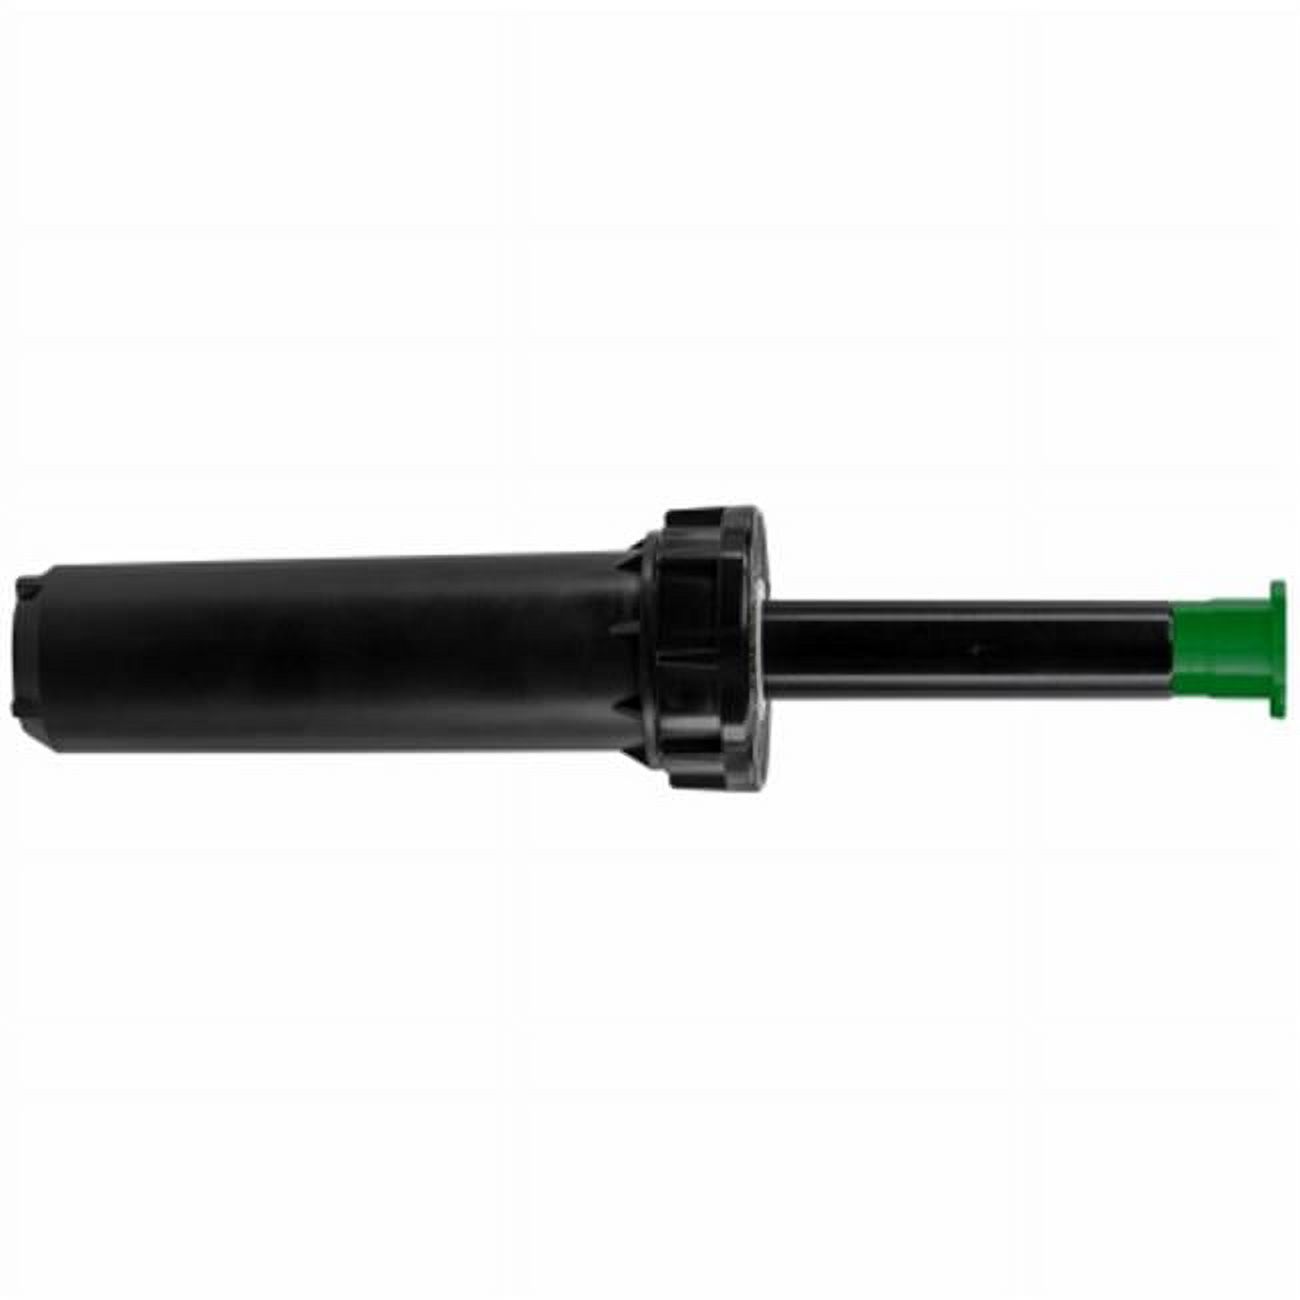 Orbit Professional Series 4 in. H Adjustable Pop-Up Sprinkler W/Flush Plug - image 1 of 1